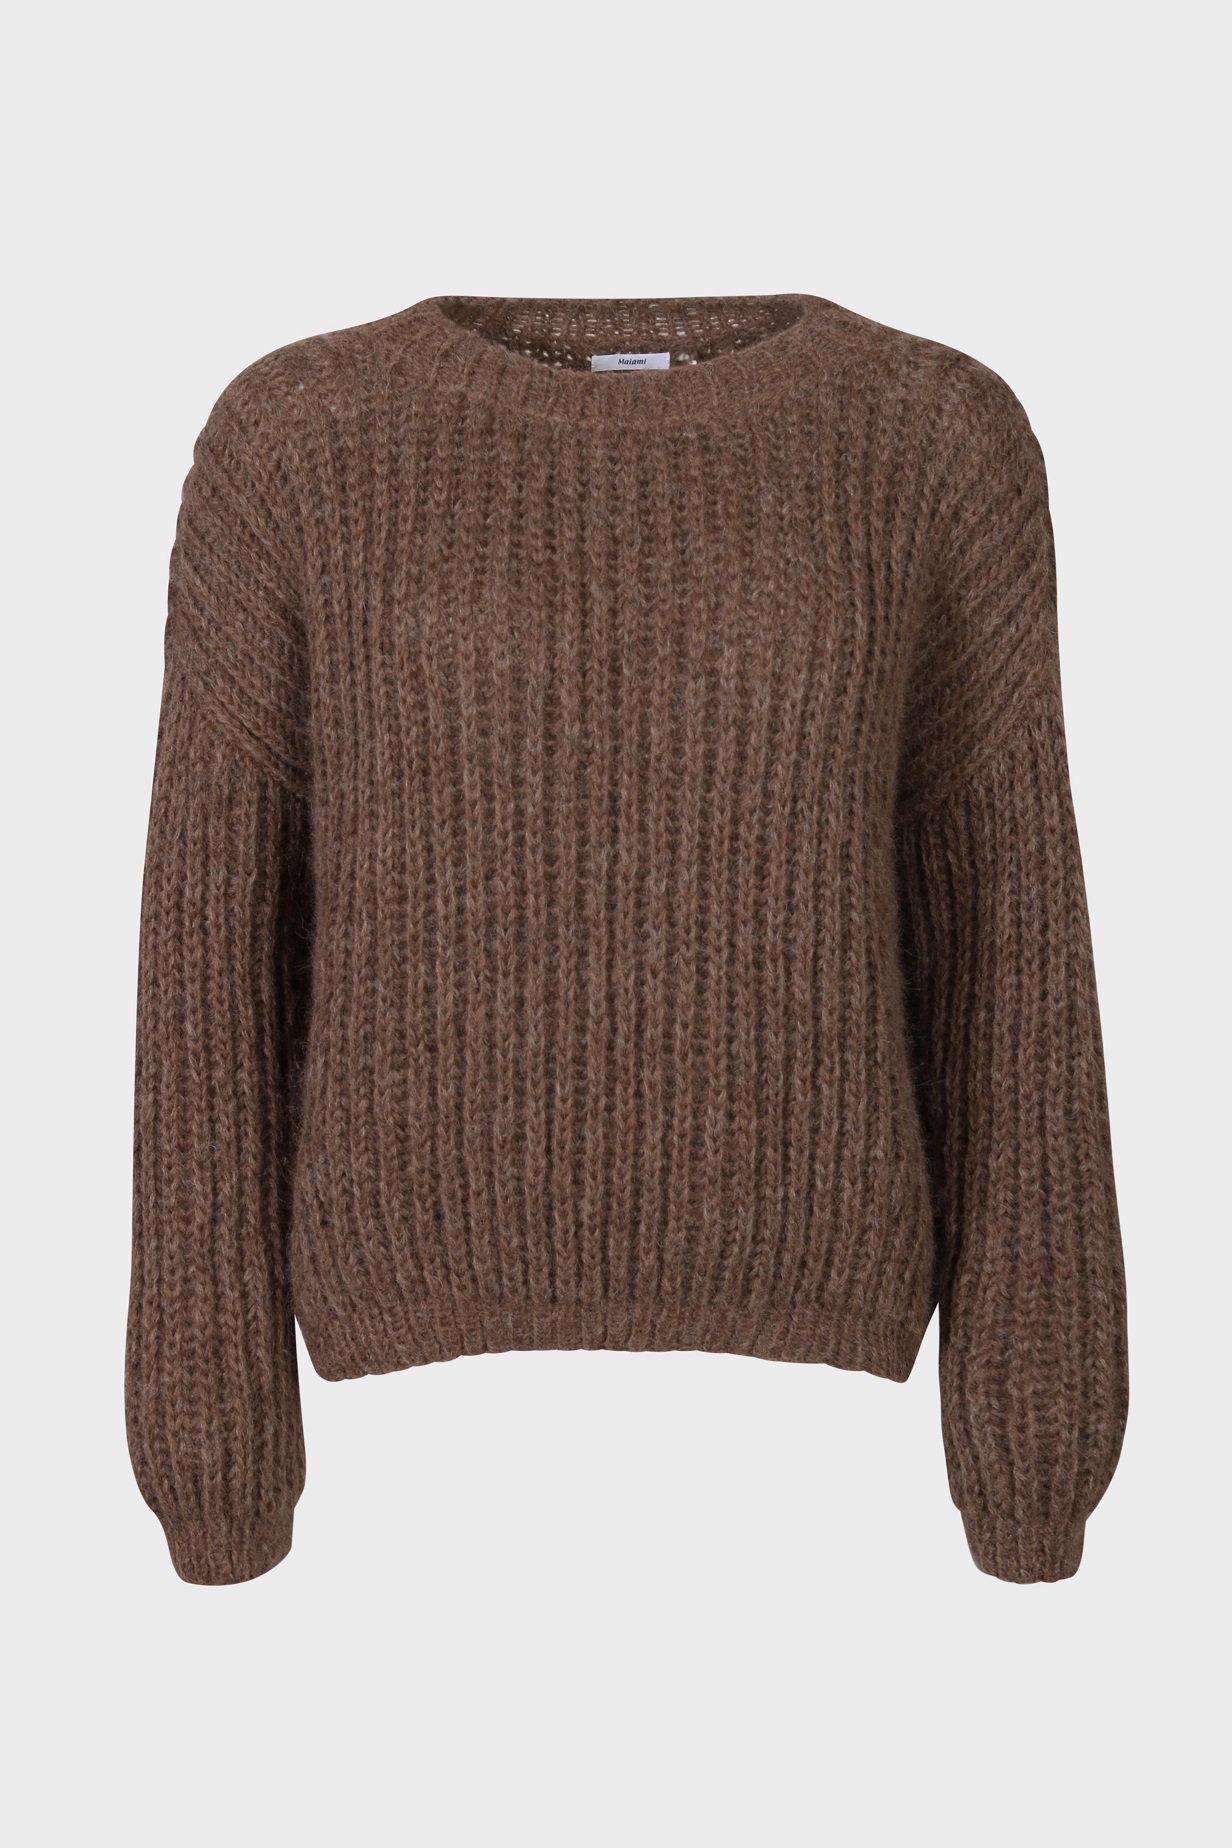 MAIAMI Brioche Knit Pullover in Brown